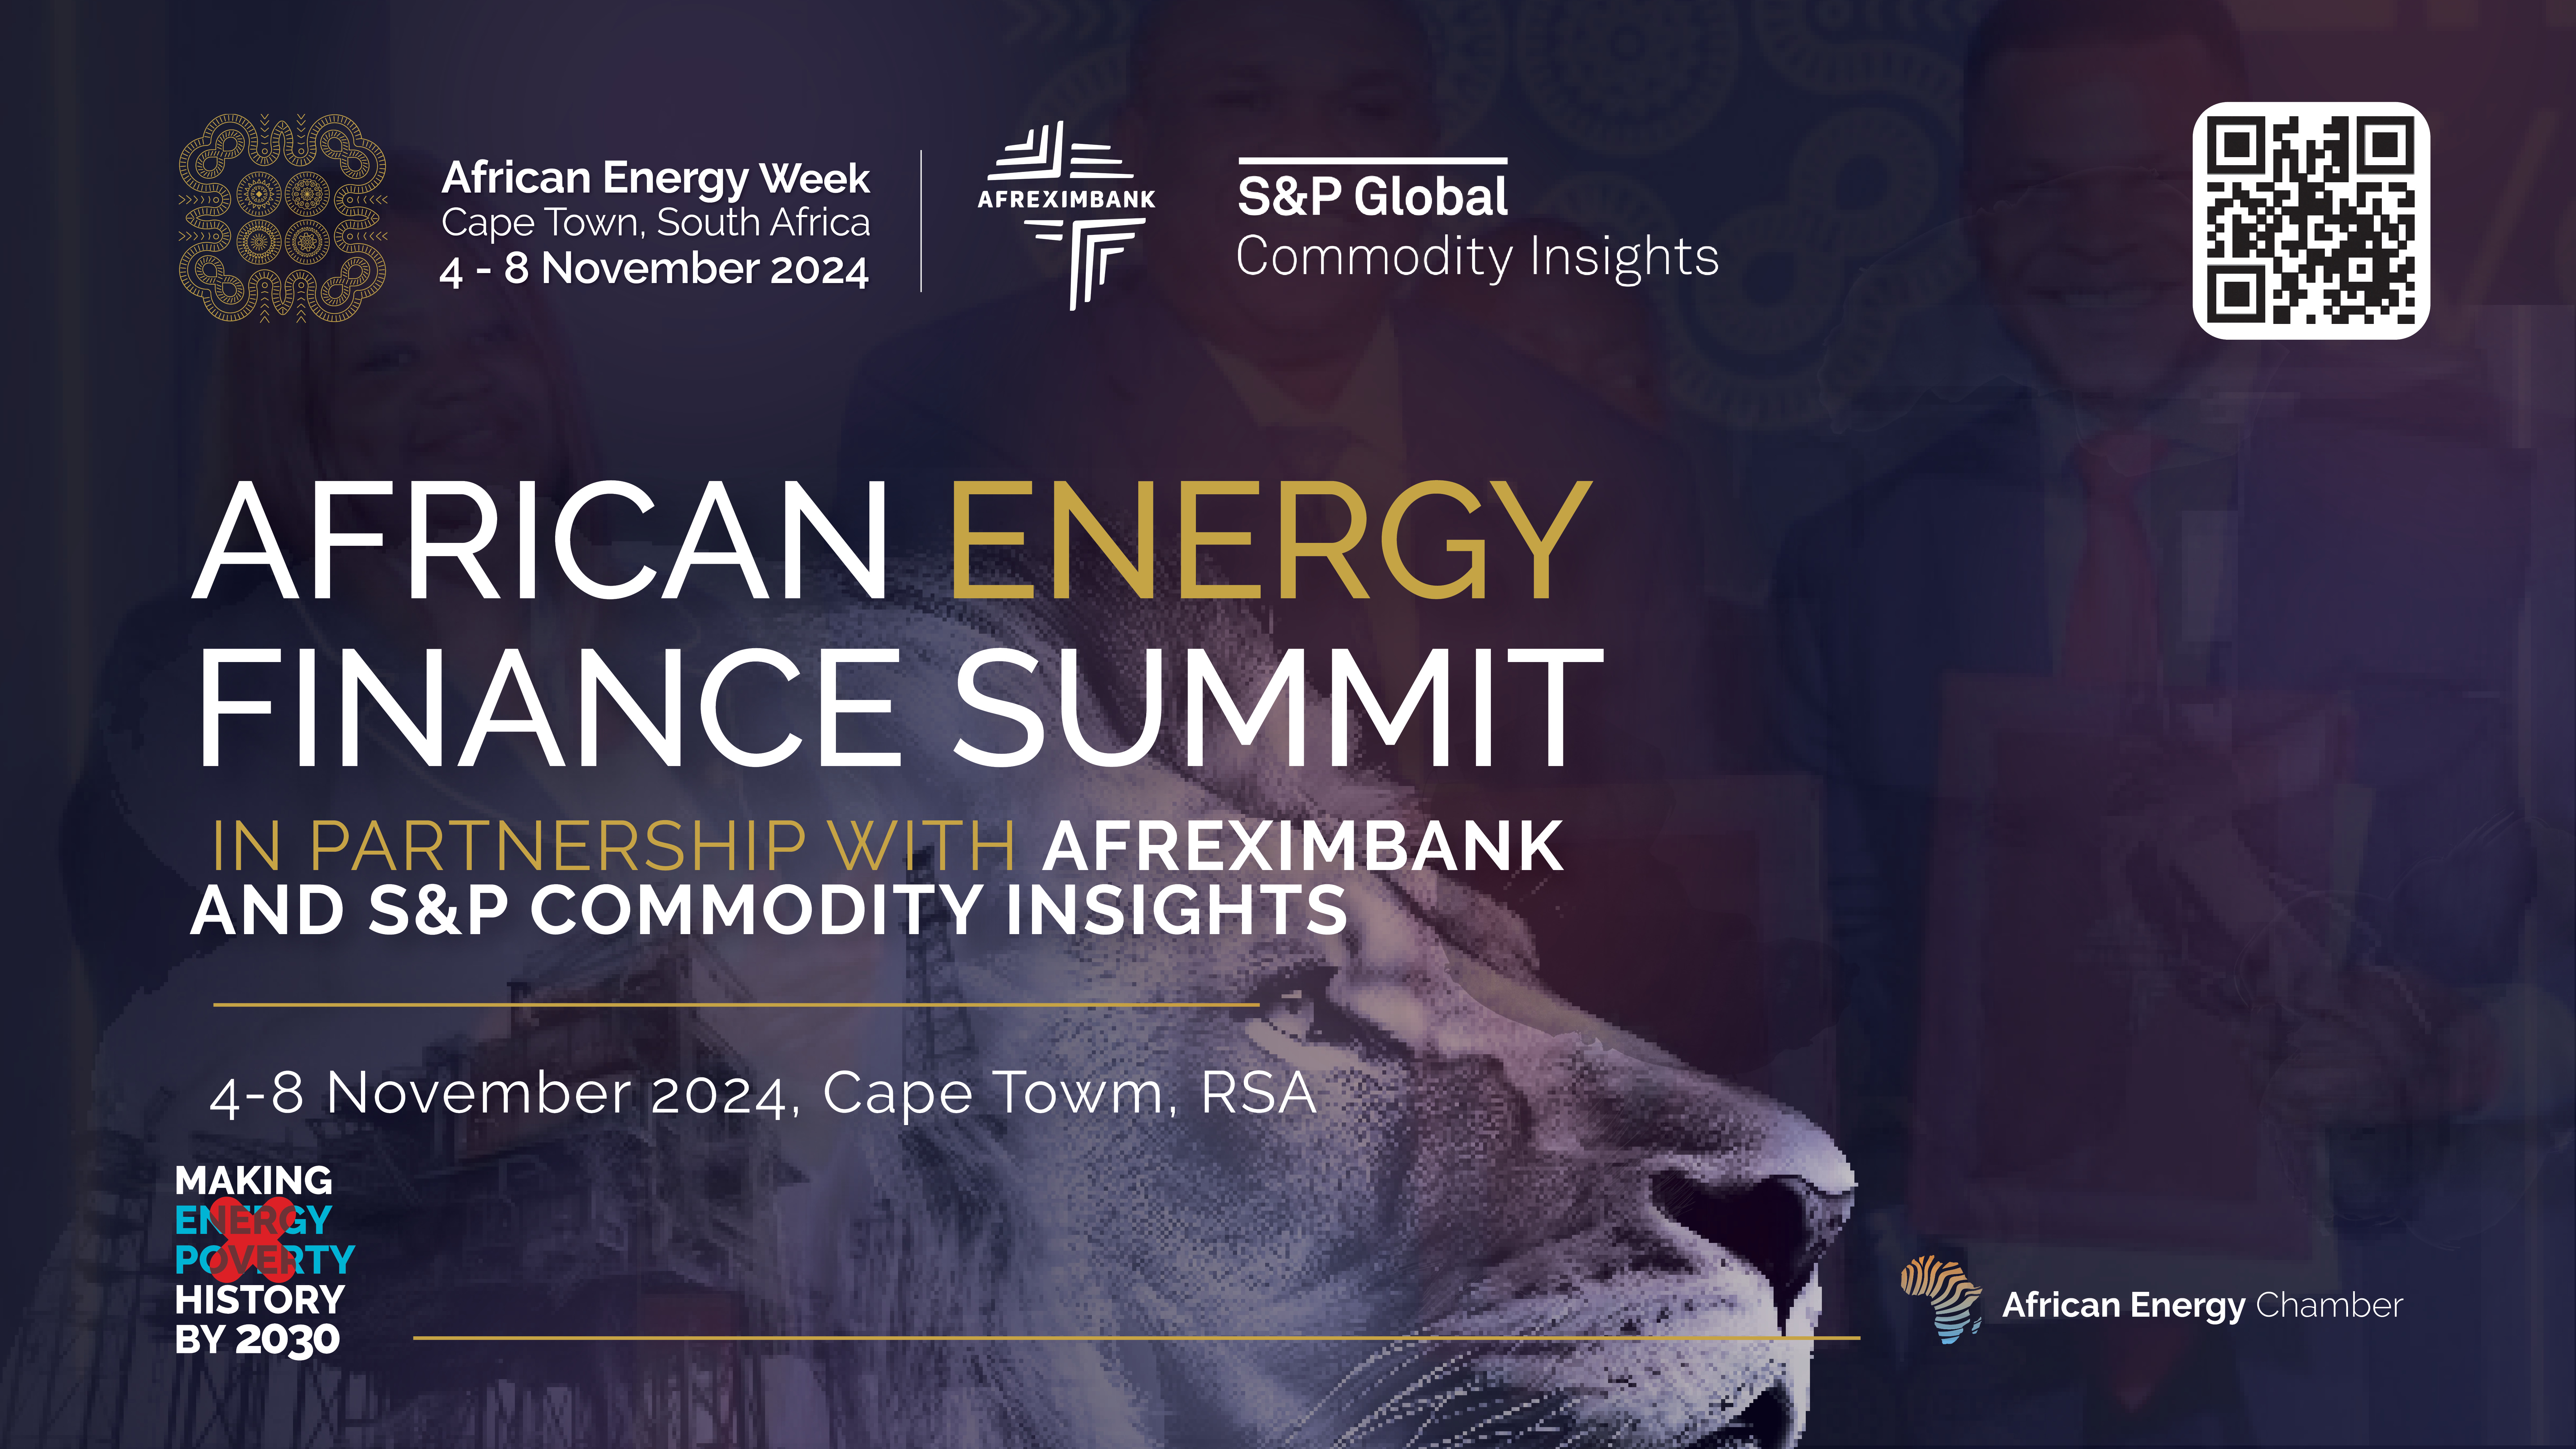 La Semaine africaine de l'énergie lance le sommet africain sur le financement de l'énergie en partenariat avec Afreximbank et S&P Global Commodity Insights